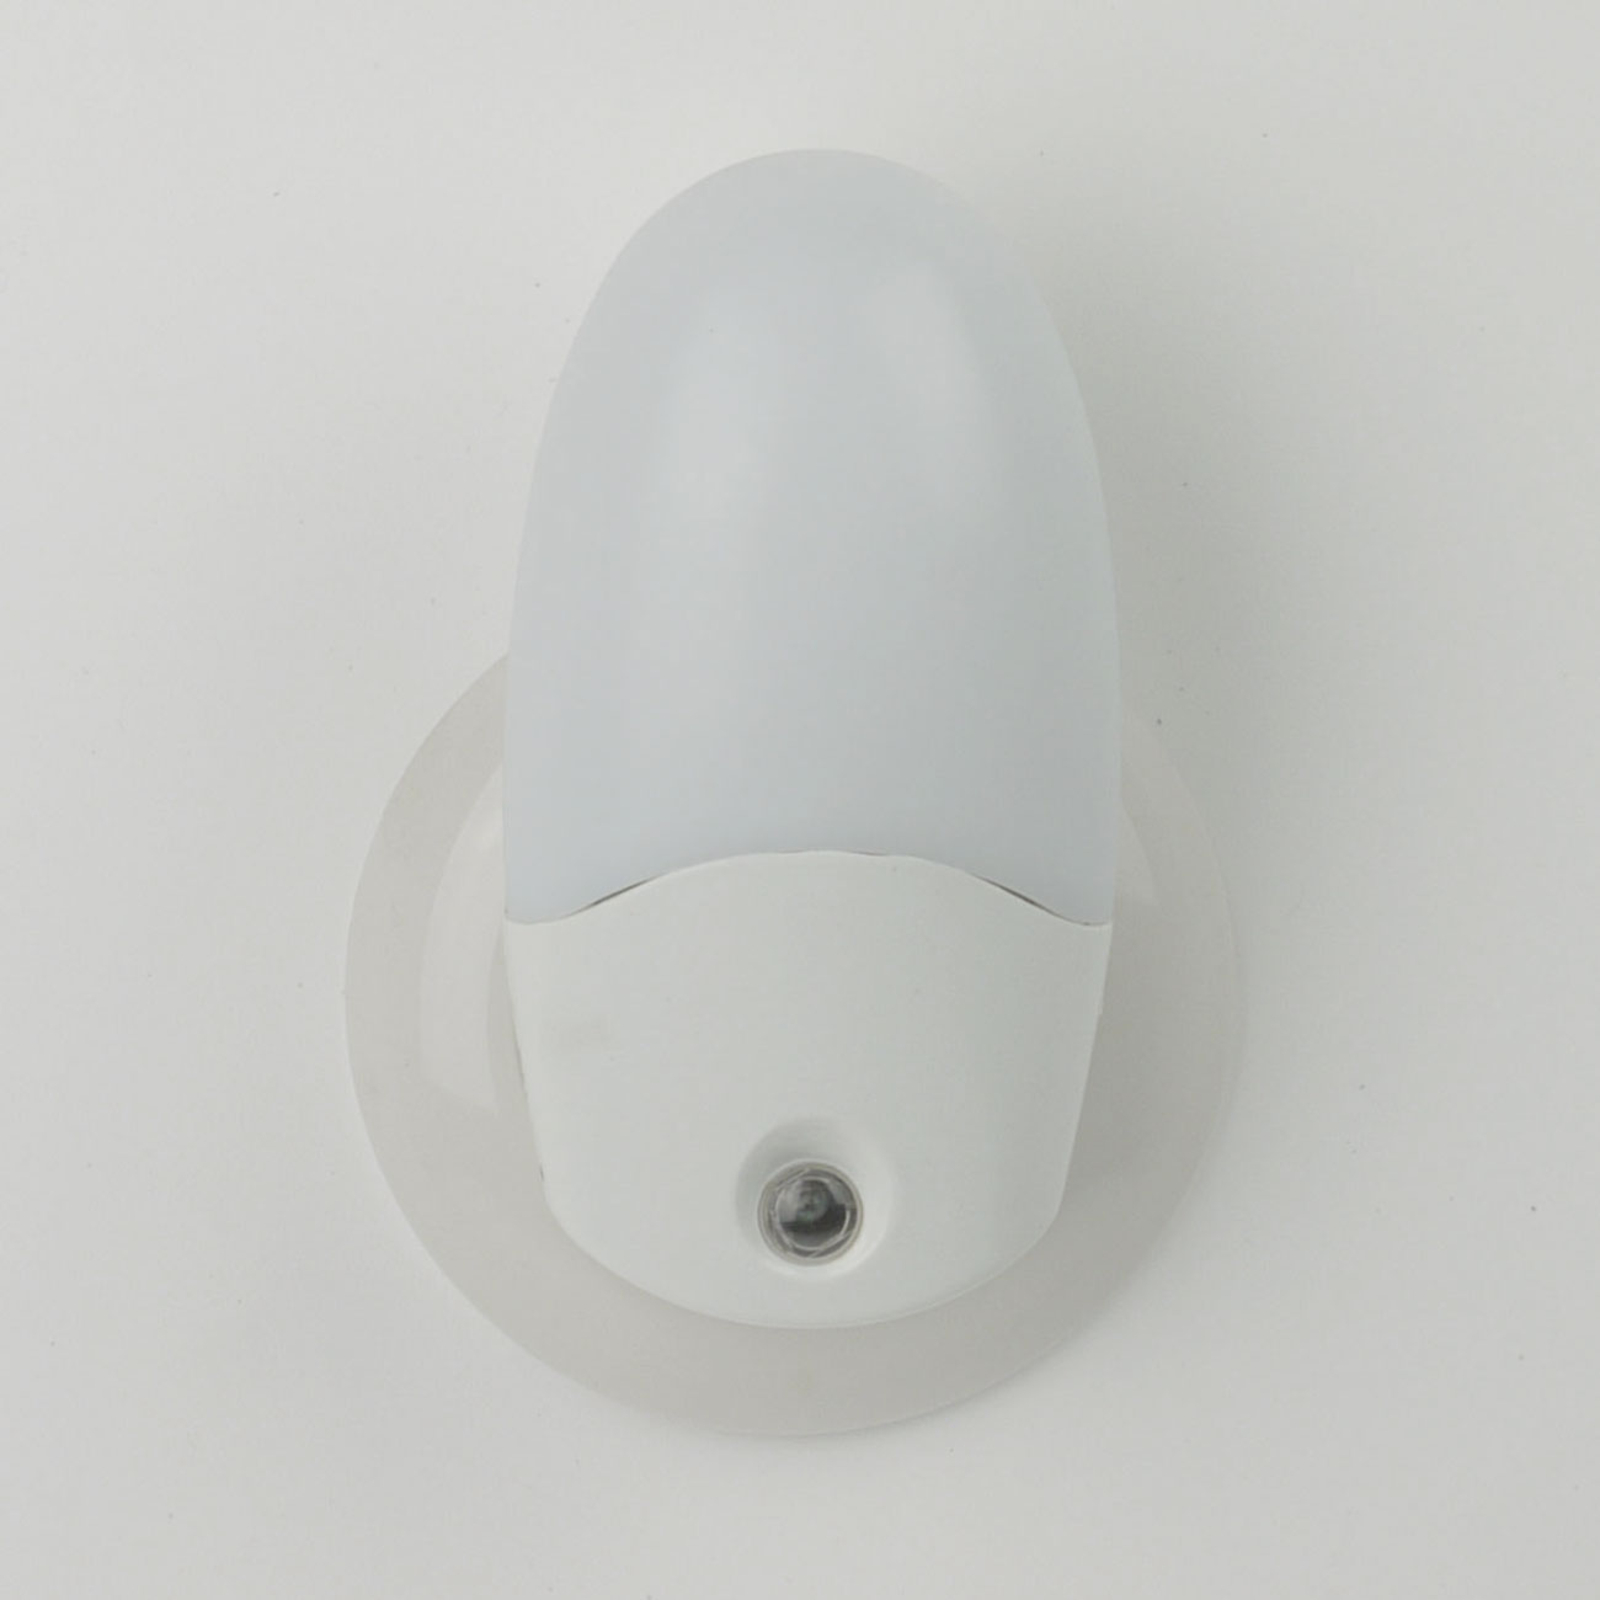 LED nachtlampje Oval met schemersensor